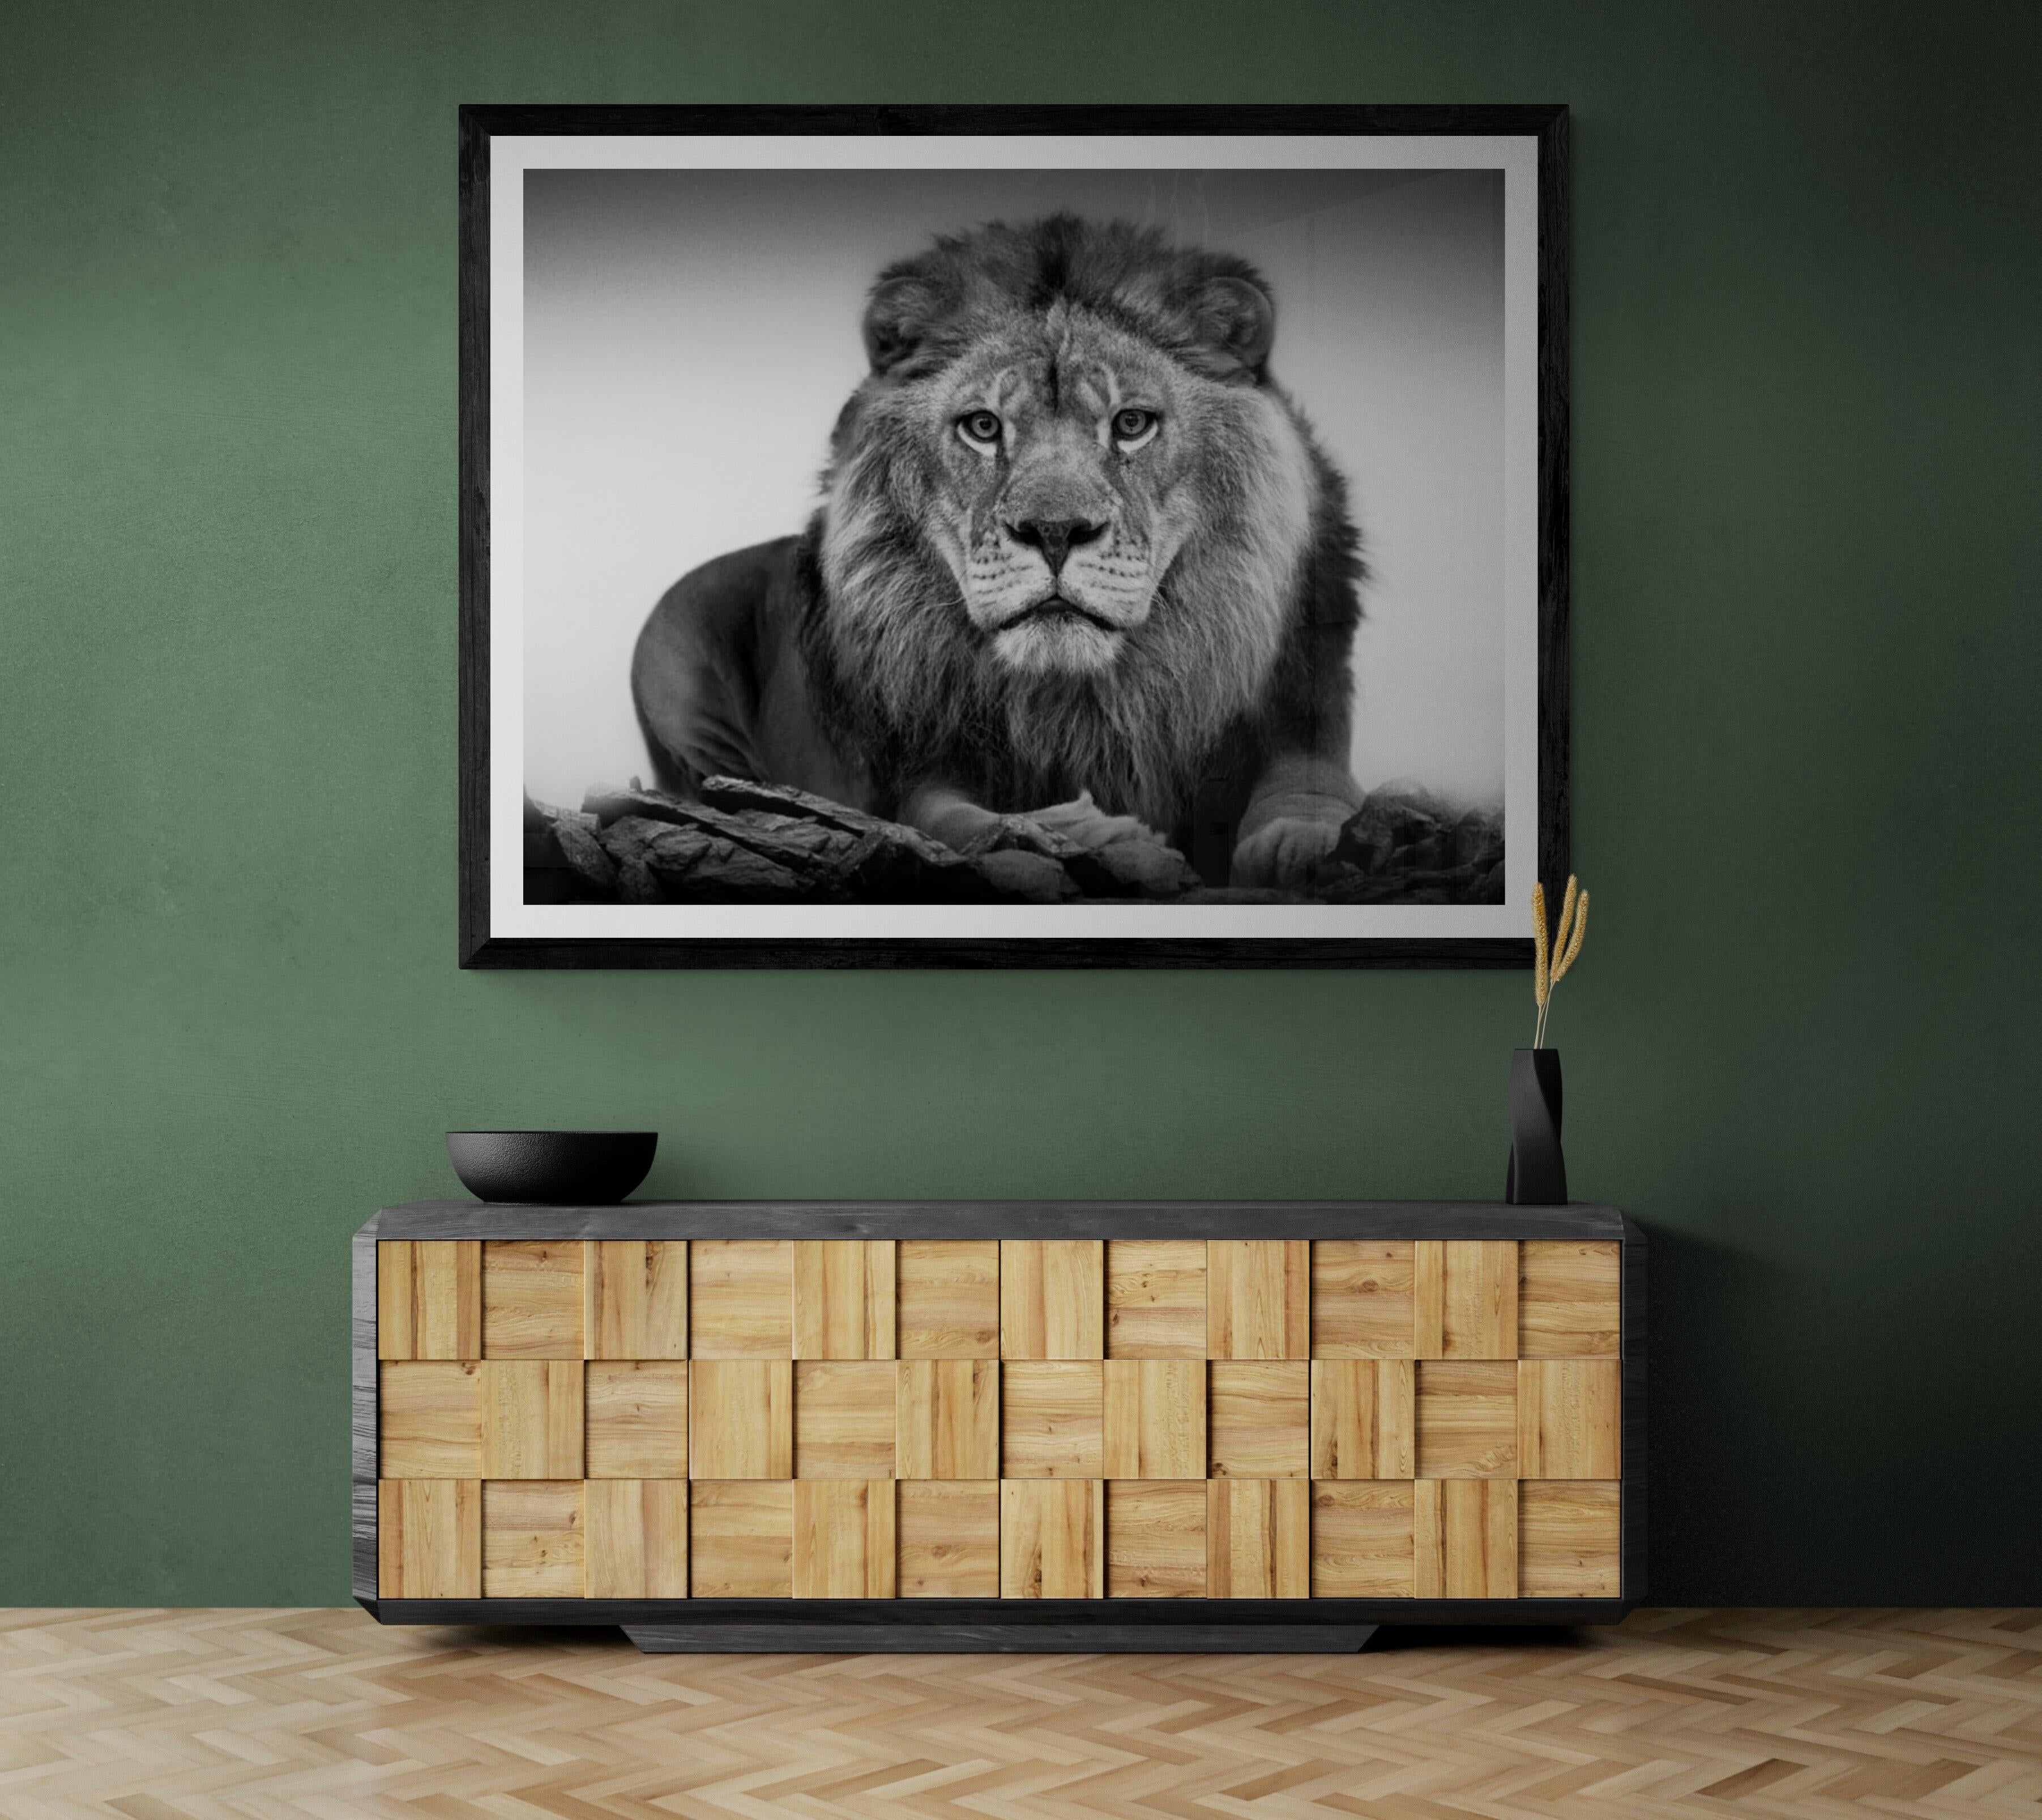 Il s'agit d'une photographie contemporaine d'un lion africain. 
36x48
Chantée et numérotée
Edition de 12
Papier semi-brillant d'archivage.
Encadrement disponible. Renseignez-vous sur les tarifs. 

LIVRAISON GRATUITE

Shane Russeck s'est forgé une